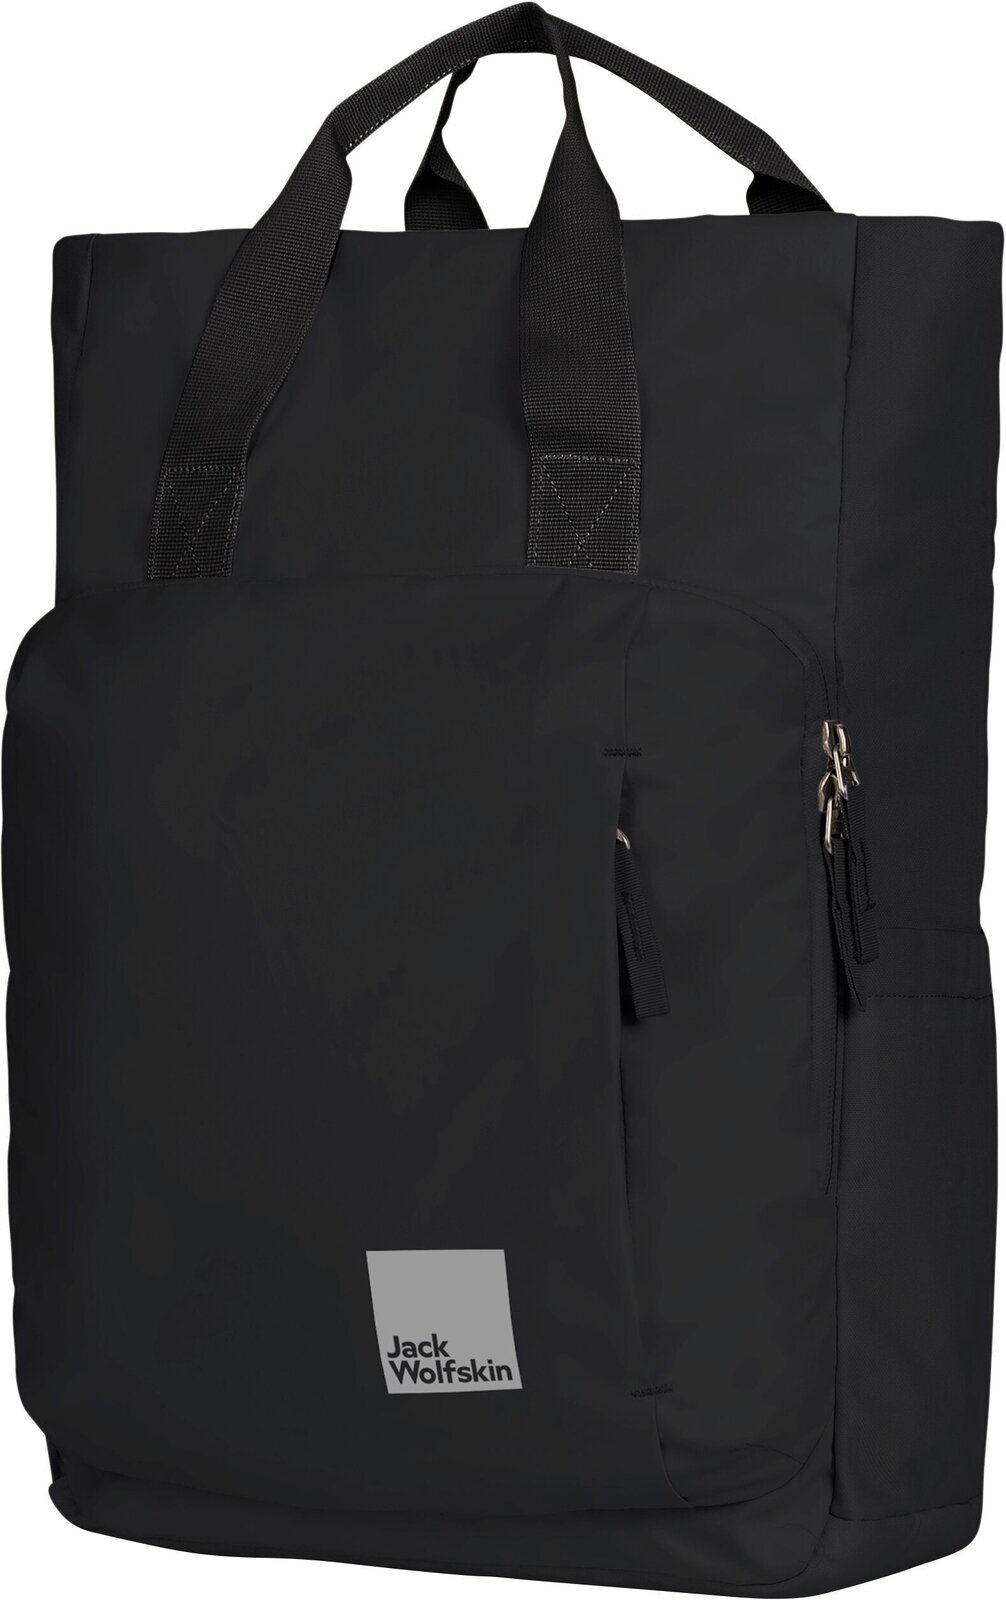 Lifestyle Backpack / Bag Jack Wolfskin Hoellenberg Black Backpack